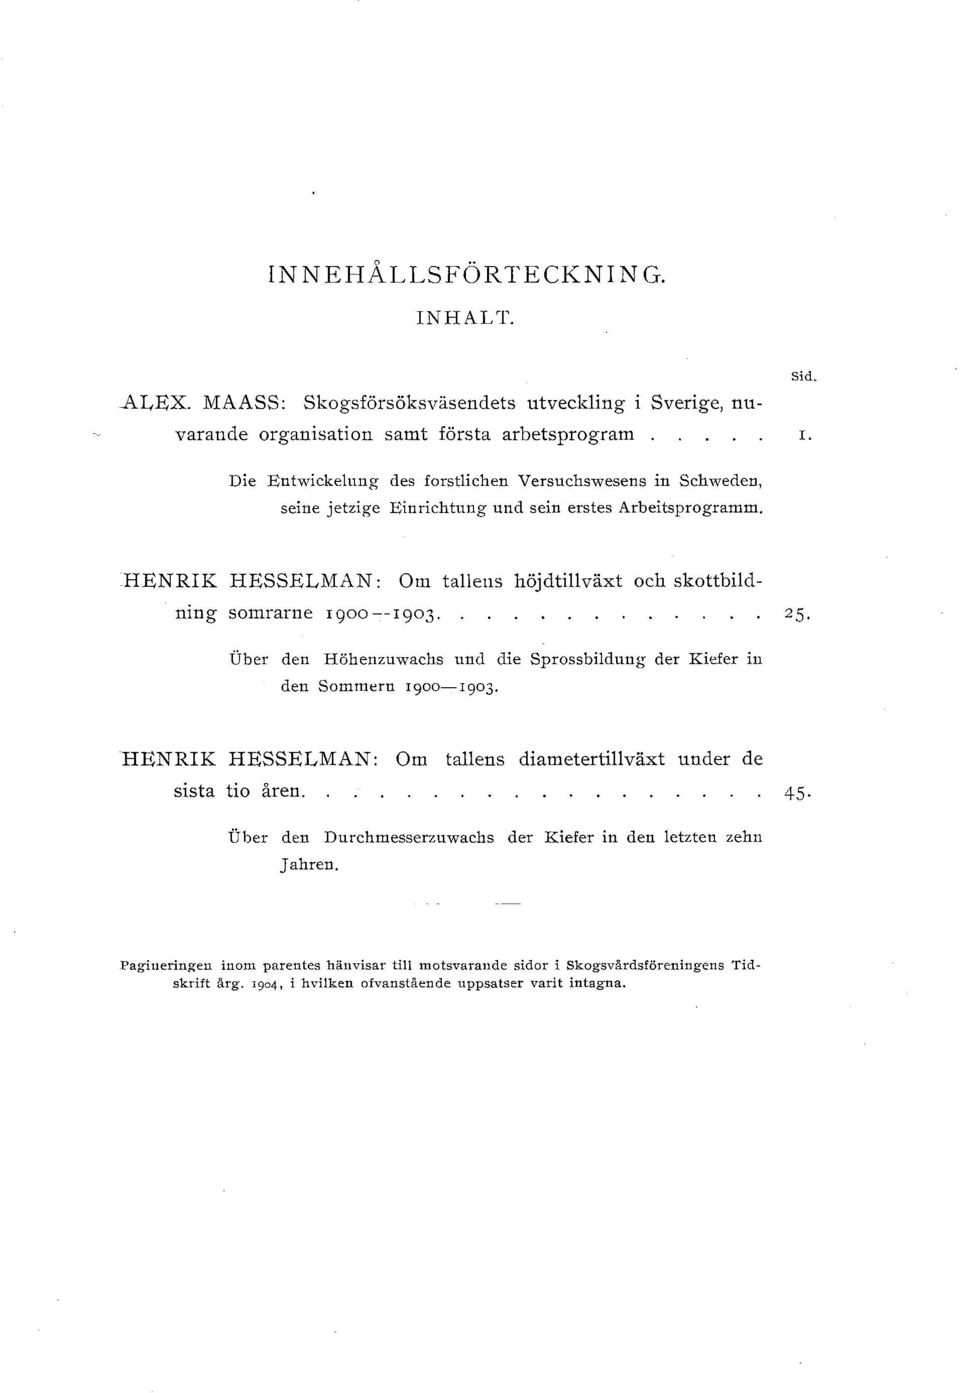 HENRIK HESSELMAN: Om taens höjdtiväxt och skottbidning somrarue rgoo--1903. Uber den Höhenznwachs und die Sprossbidnng der Kiefer in den Sommern 1900-1903.